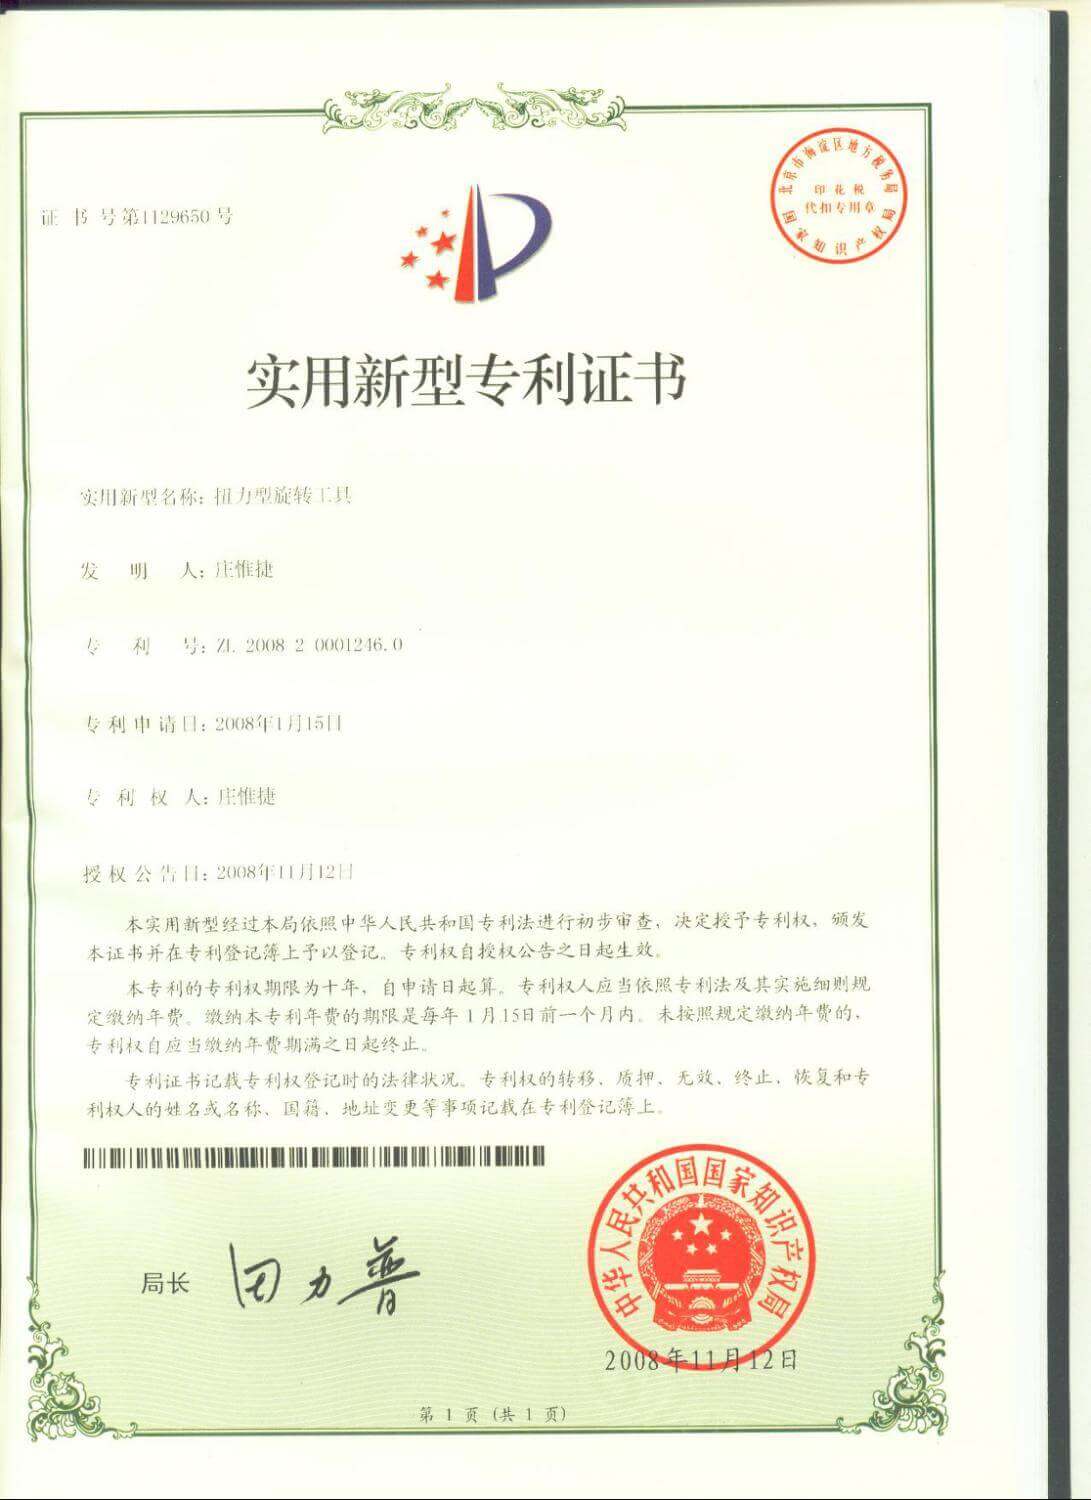 Chienfu-Tec CNC patents in Taiwan-8